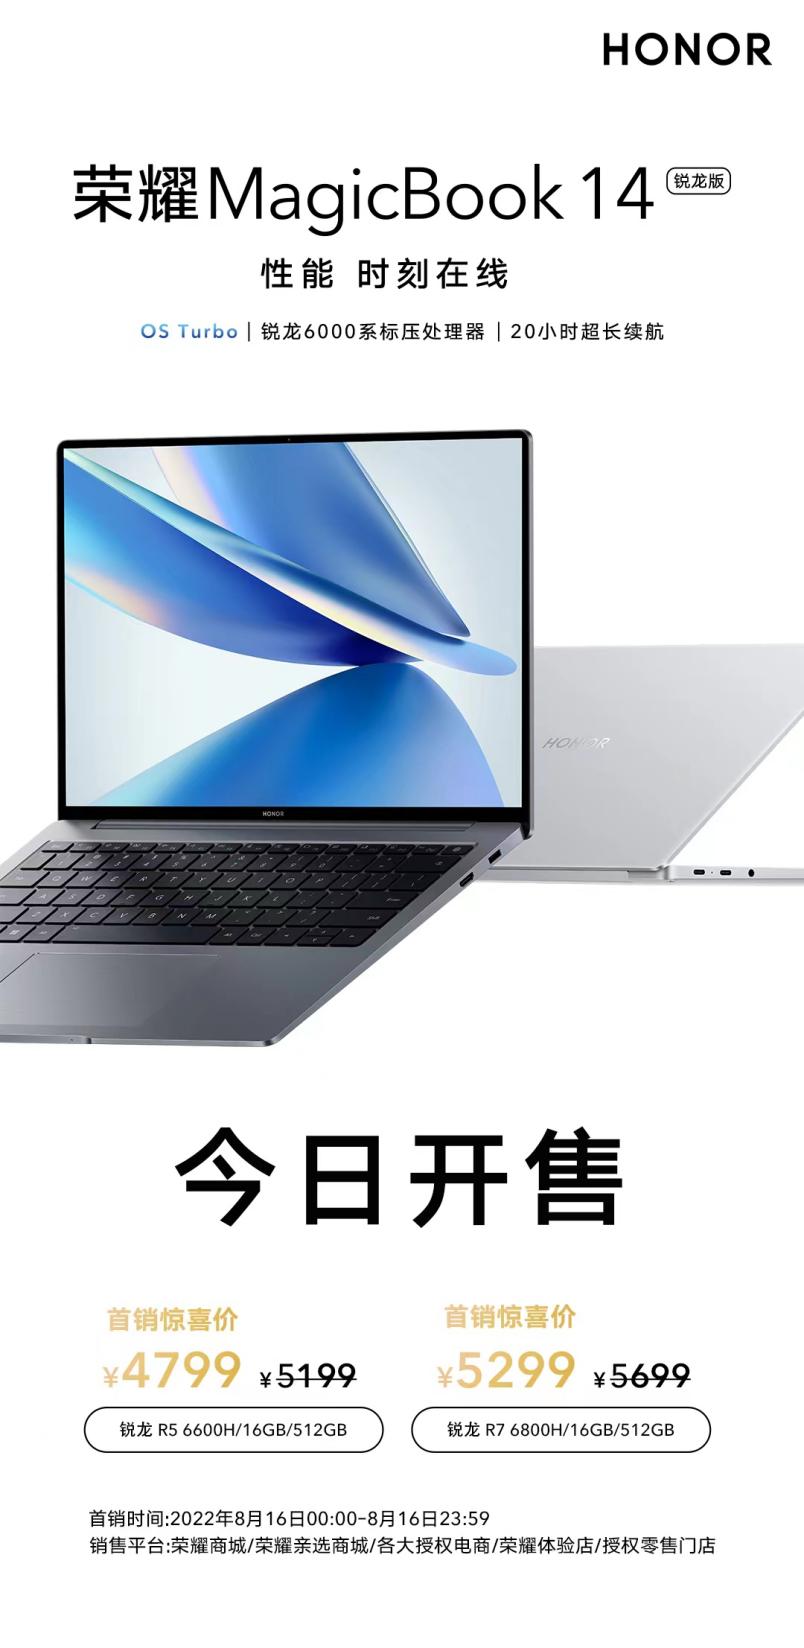 全新荣耀MagicBook 14 锐龙版今日开售，首销惊喜价4799元起 智能公会